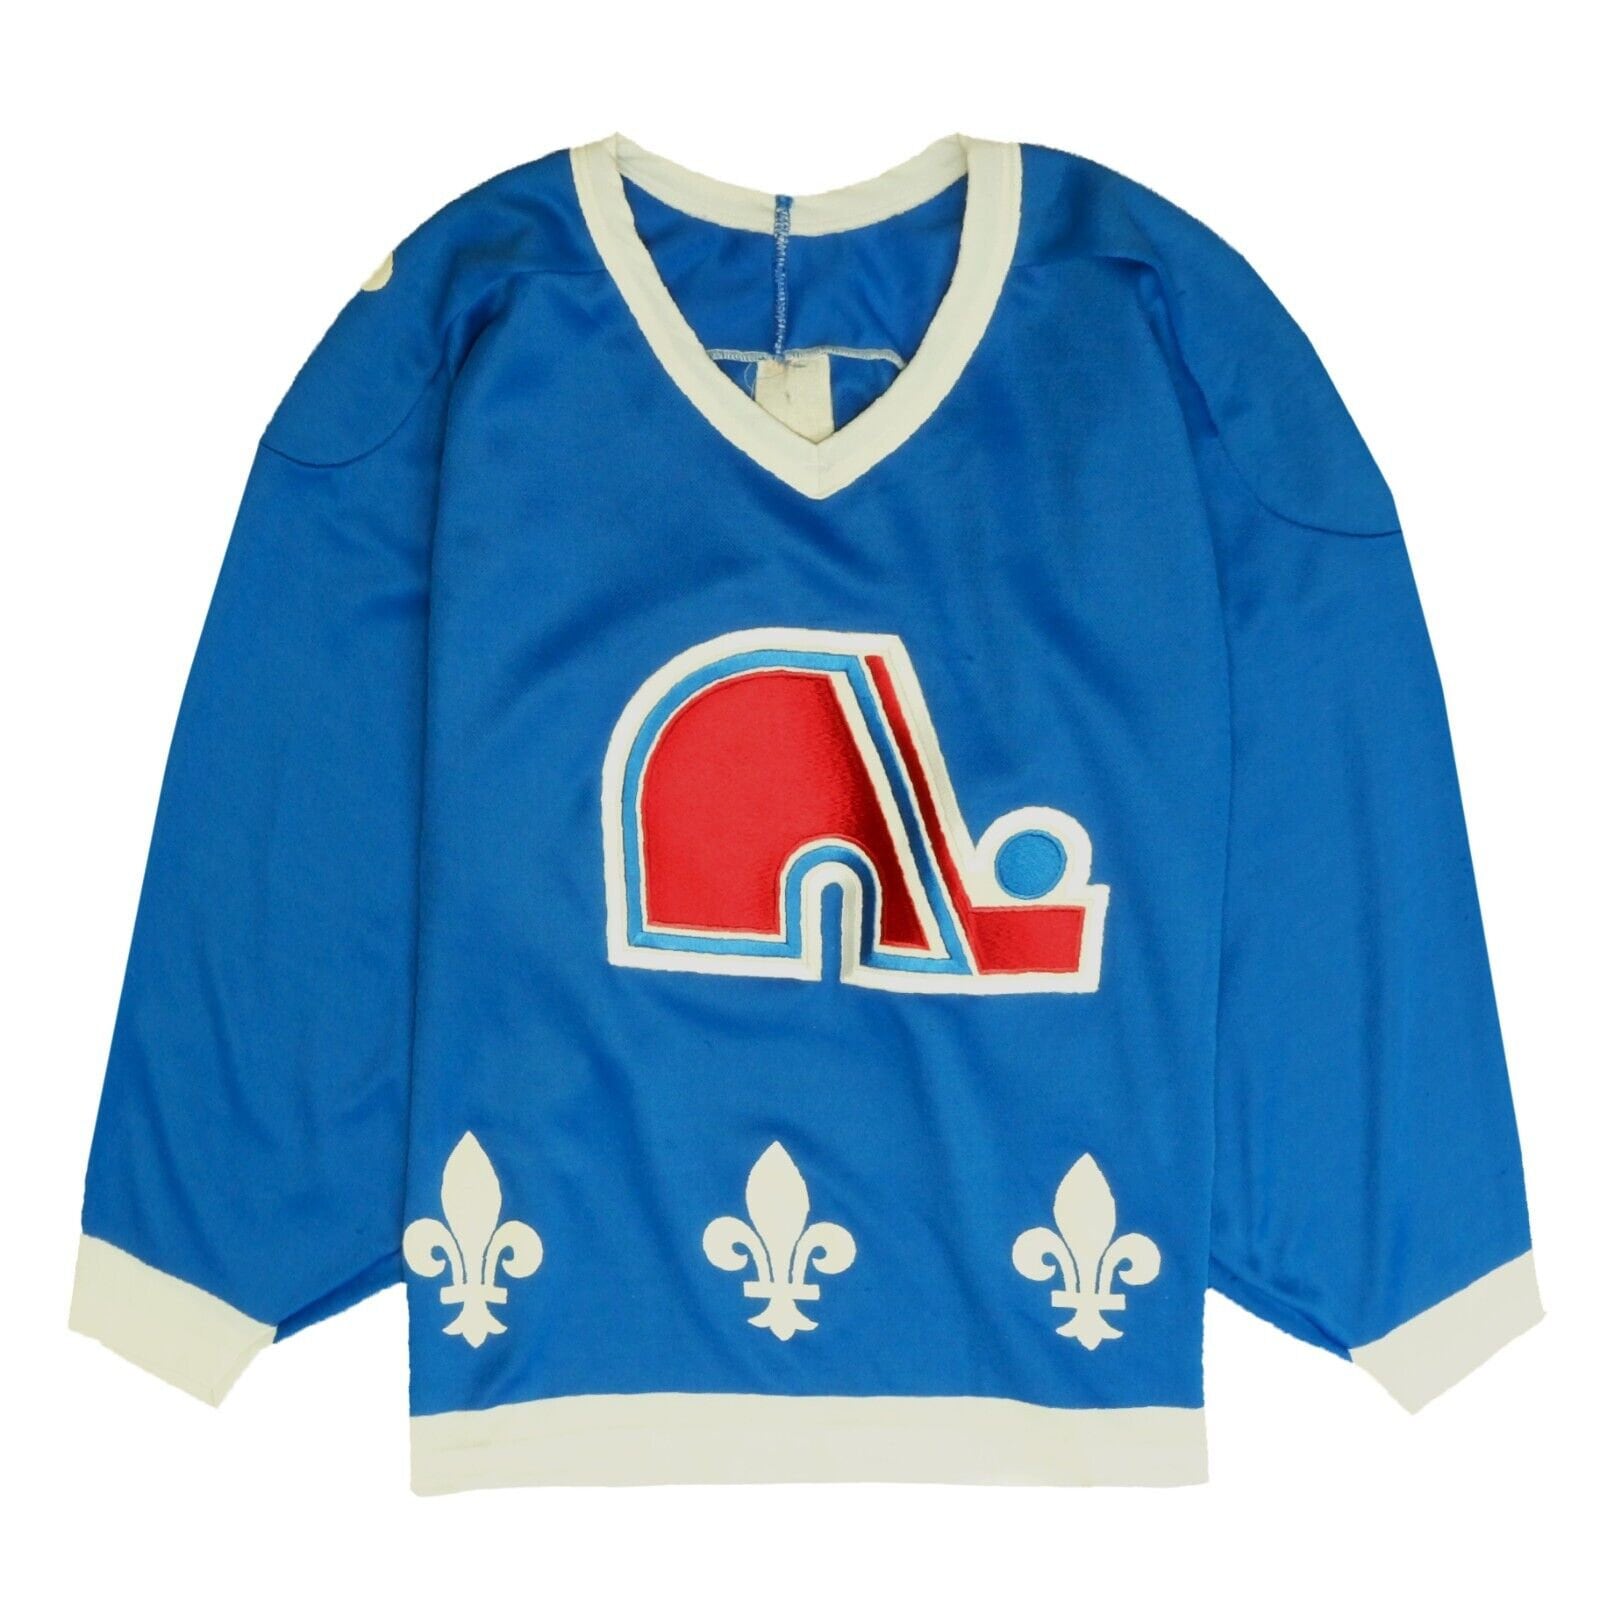 Vintage Quebec Nordiques NHL Jerseys - Custom Throwback Jerseys